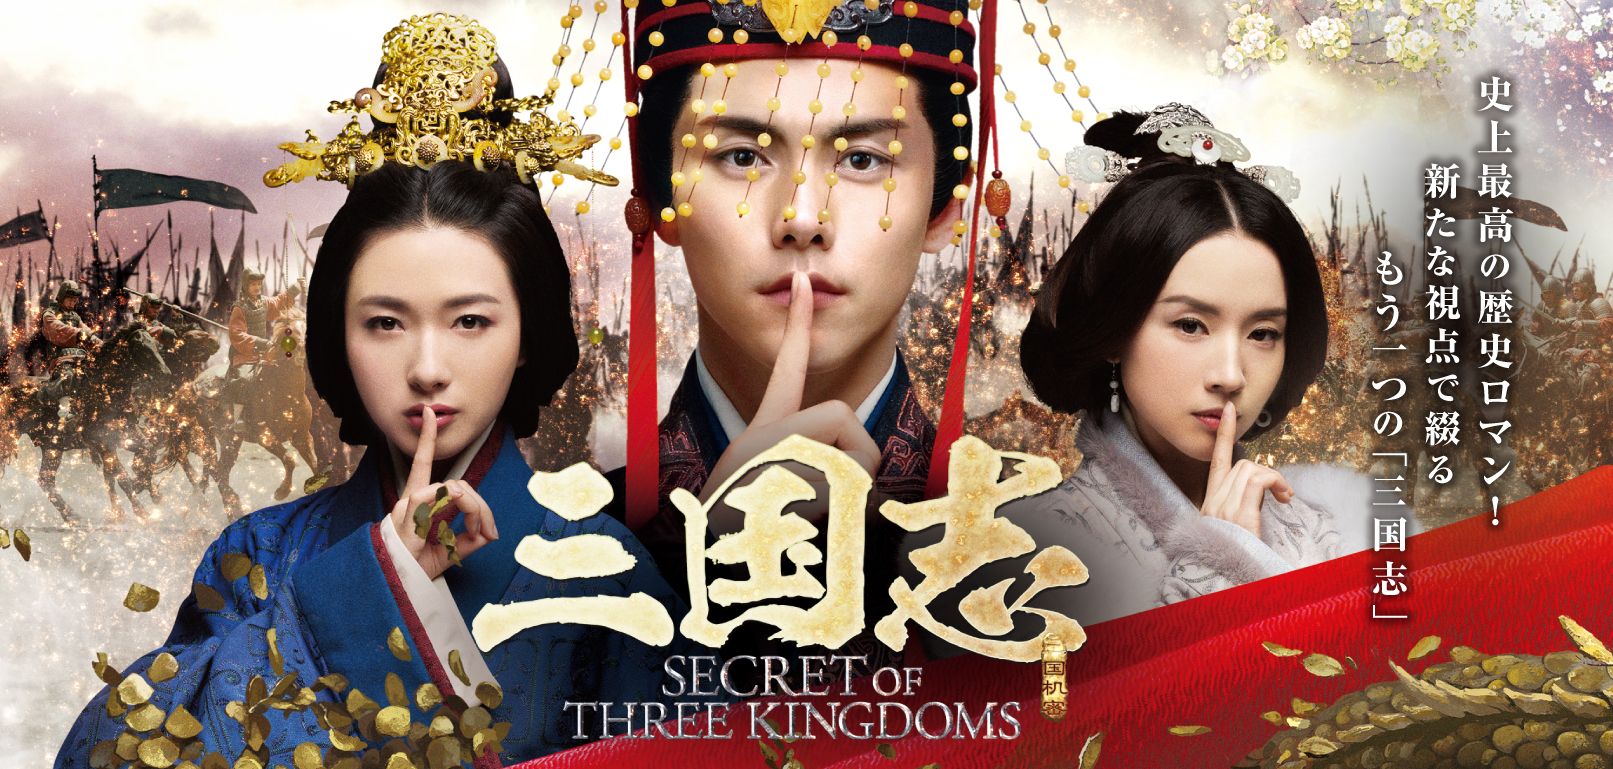 中国ドラマ「三国志 Secret of Three Kingdoms」オフィシャルサイト